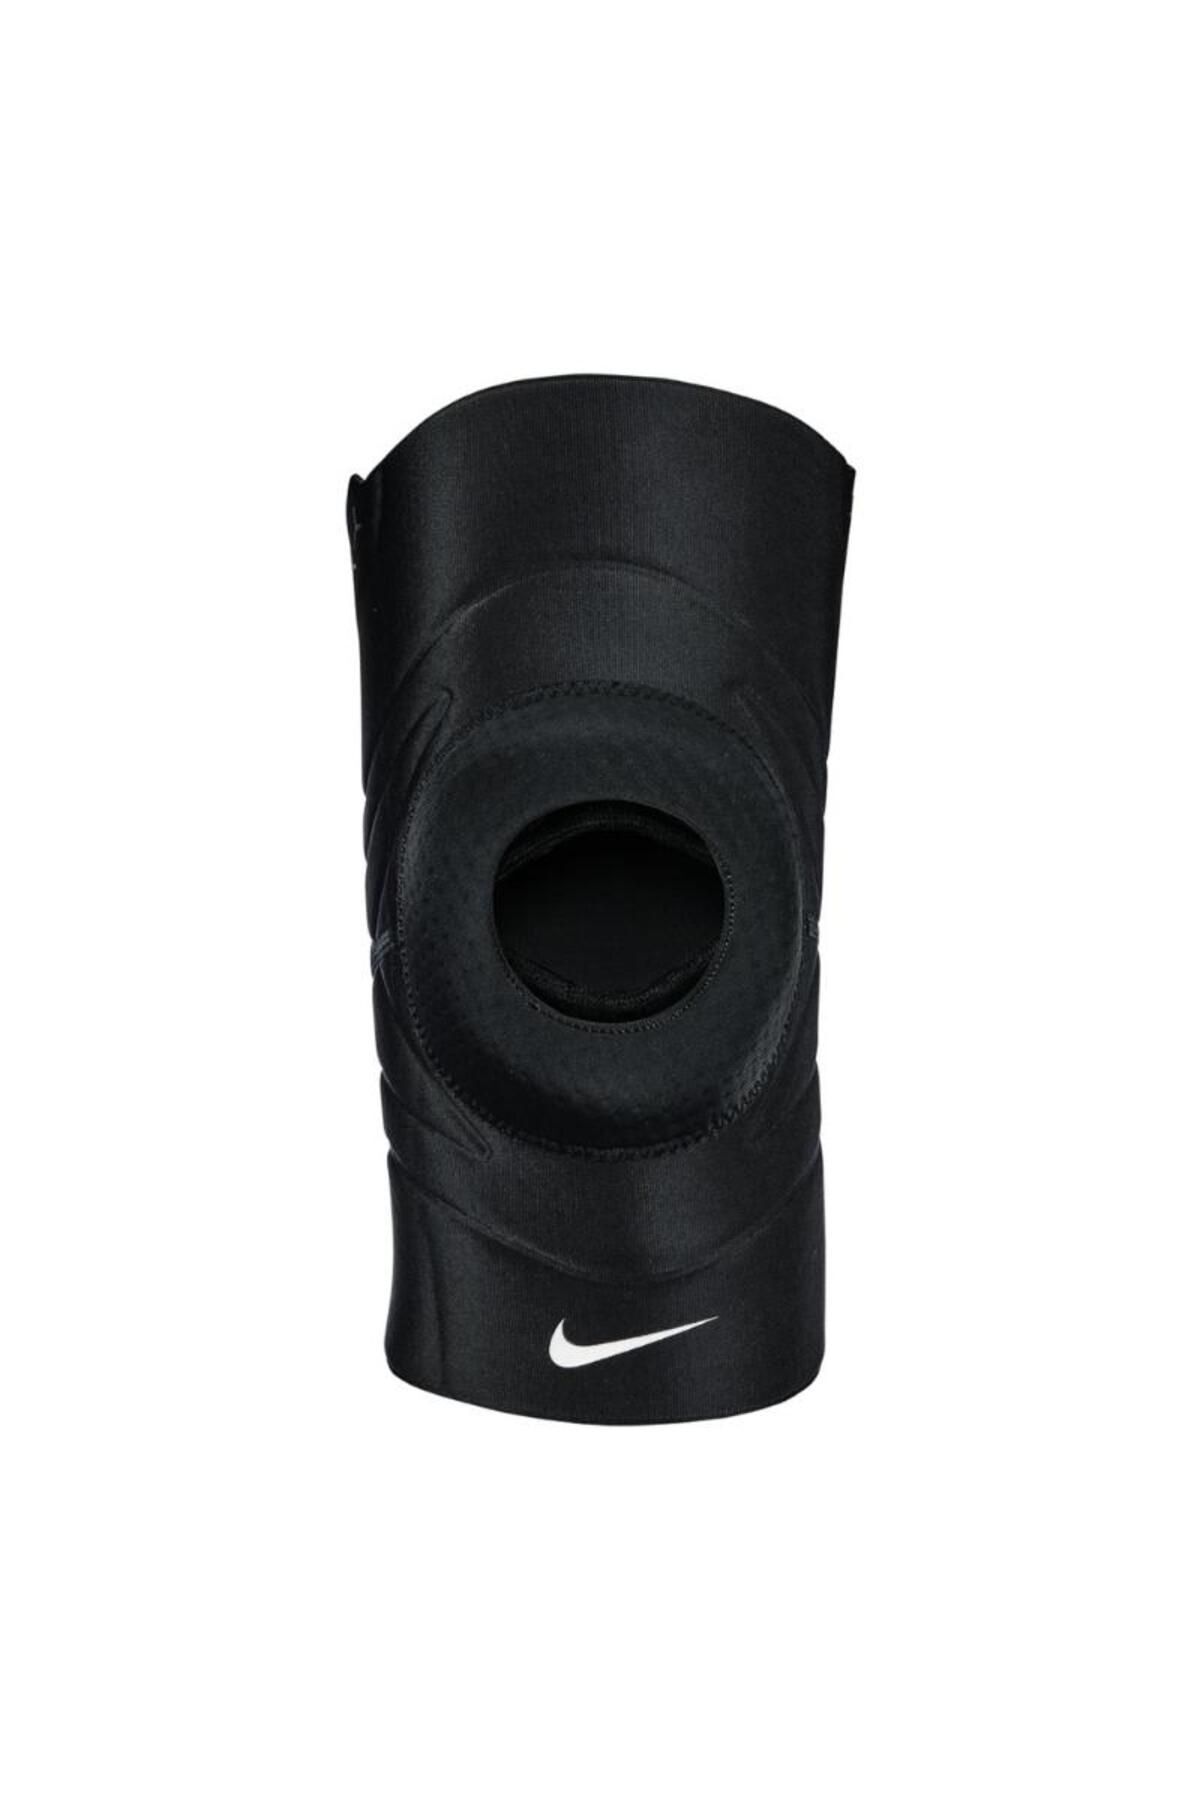 Nike Unisex Siyah Dizlik N.100.0675.010-siyah